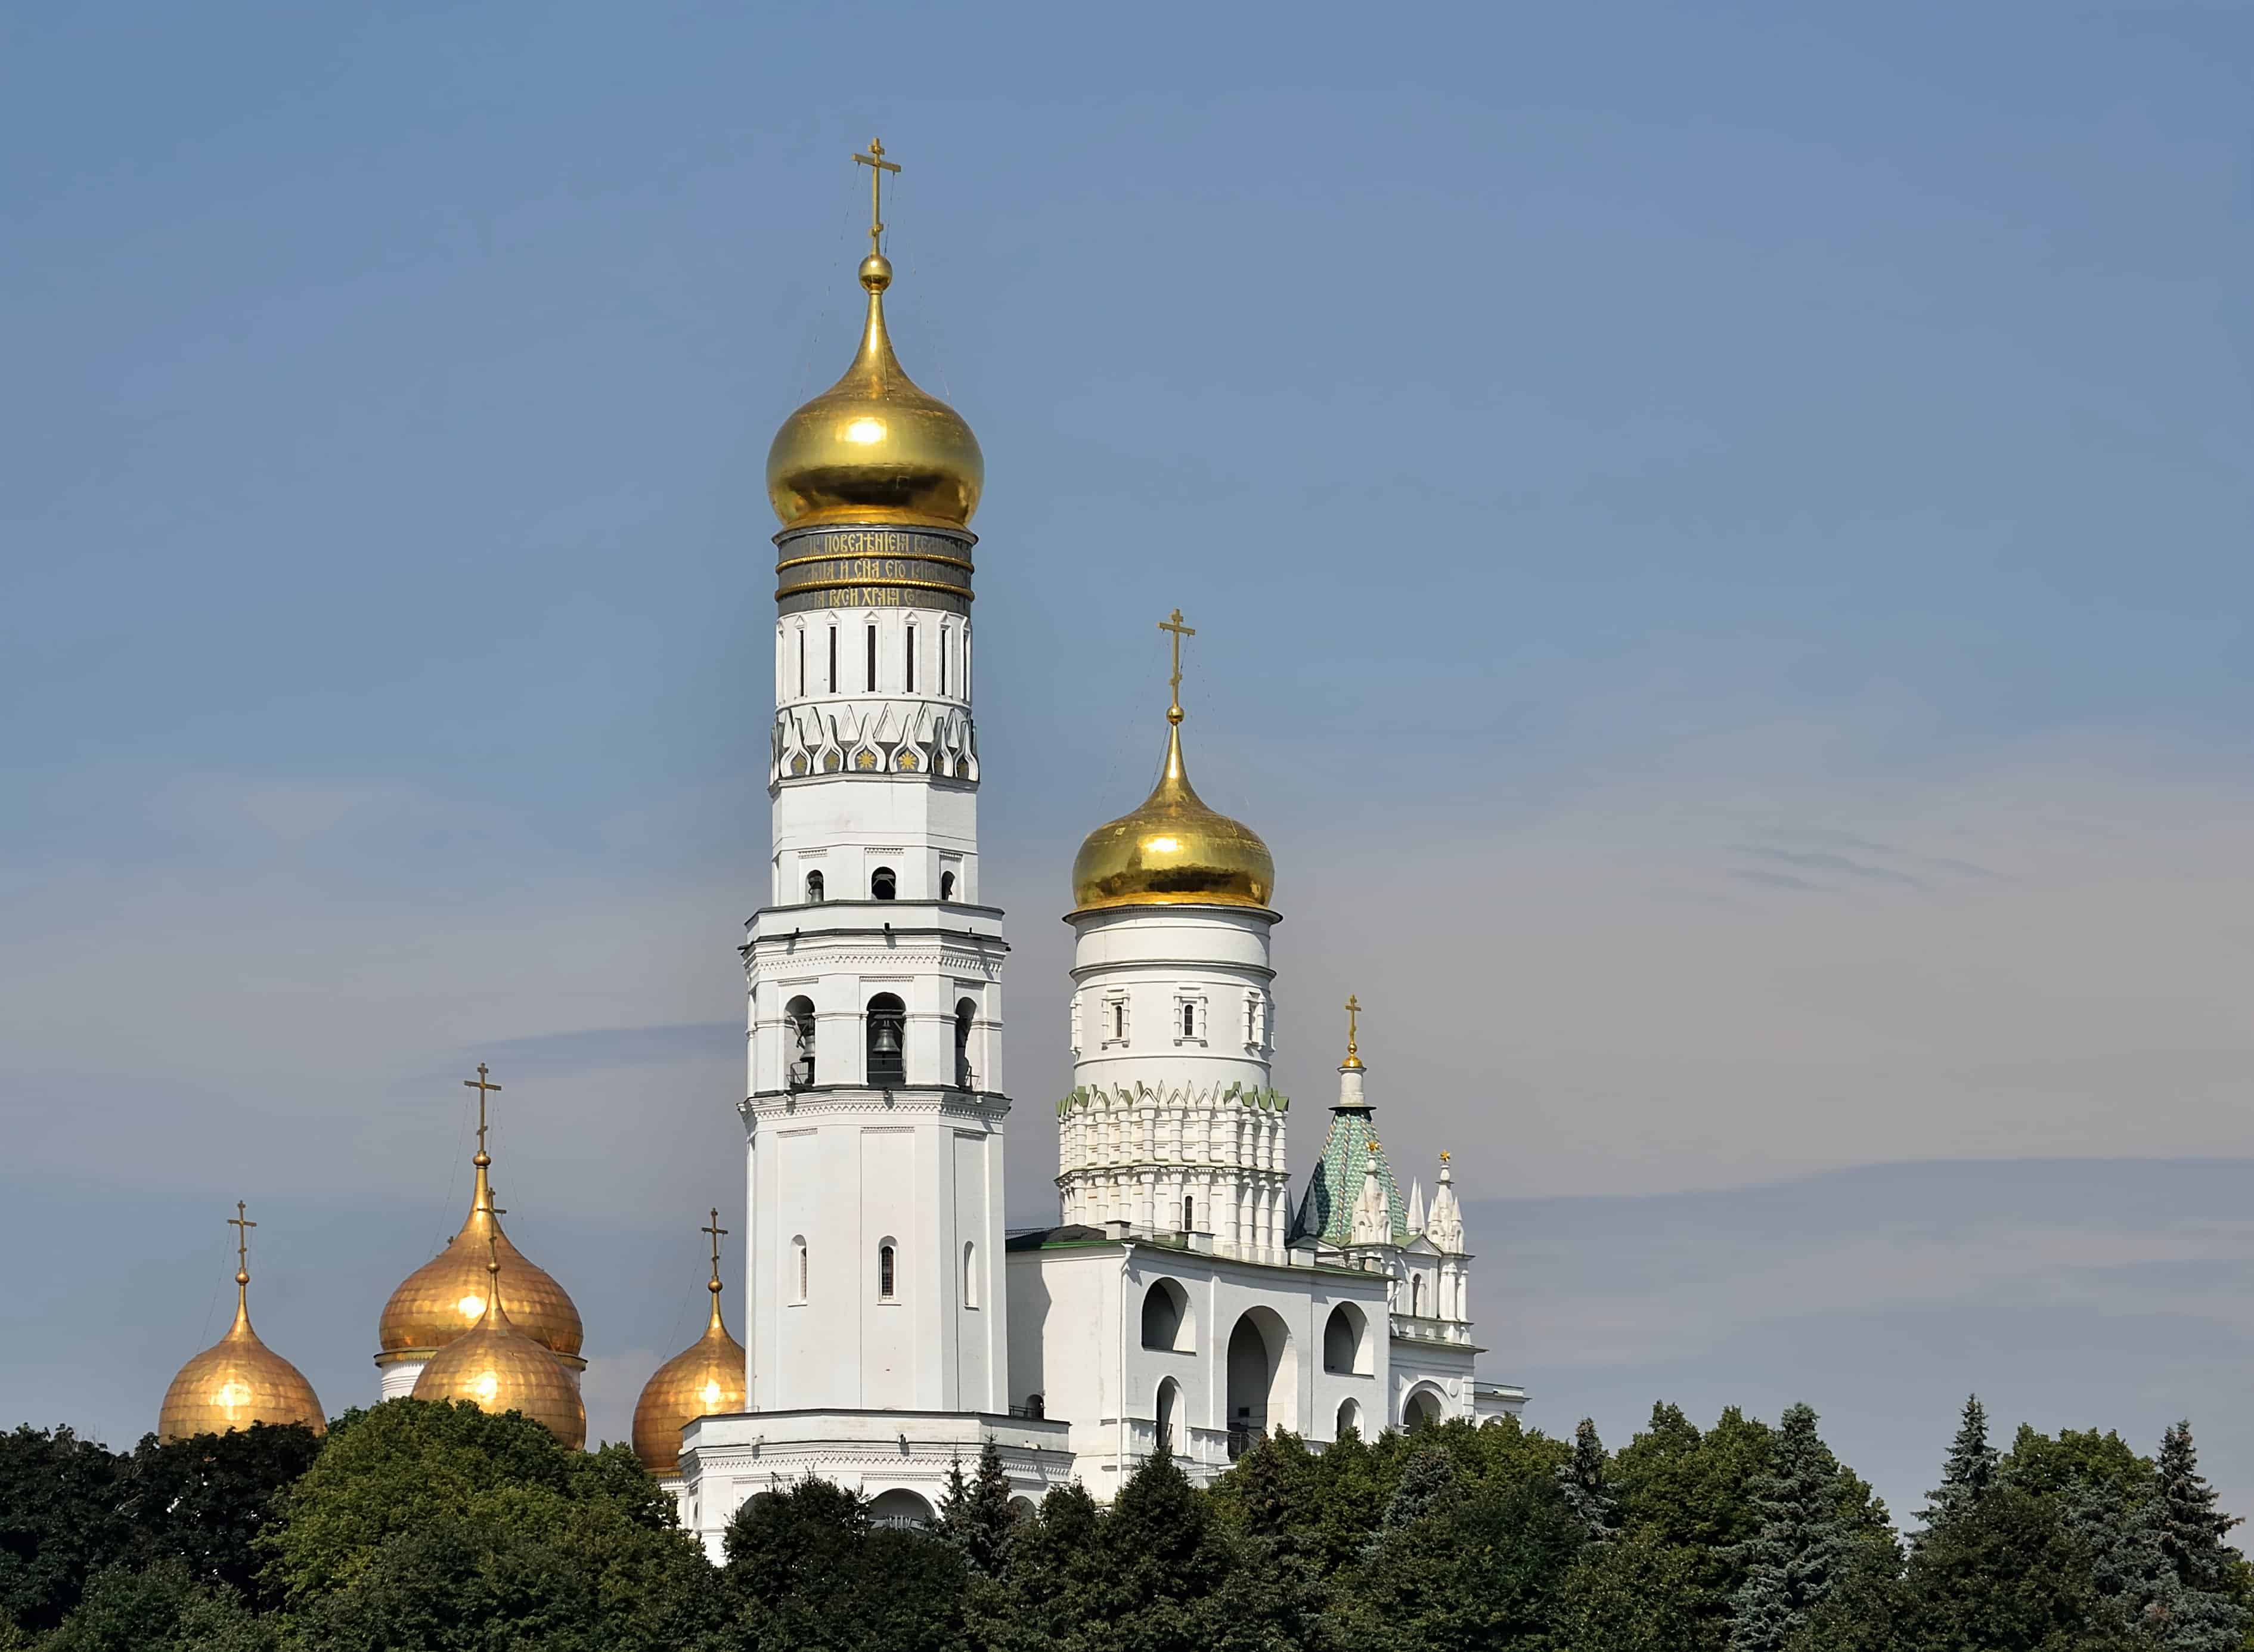 افضل 6 انشطة في برج اجراس ايفان الكبير موسكو